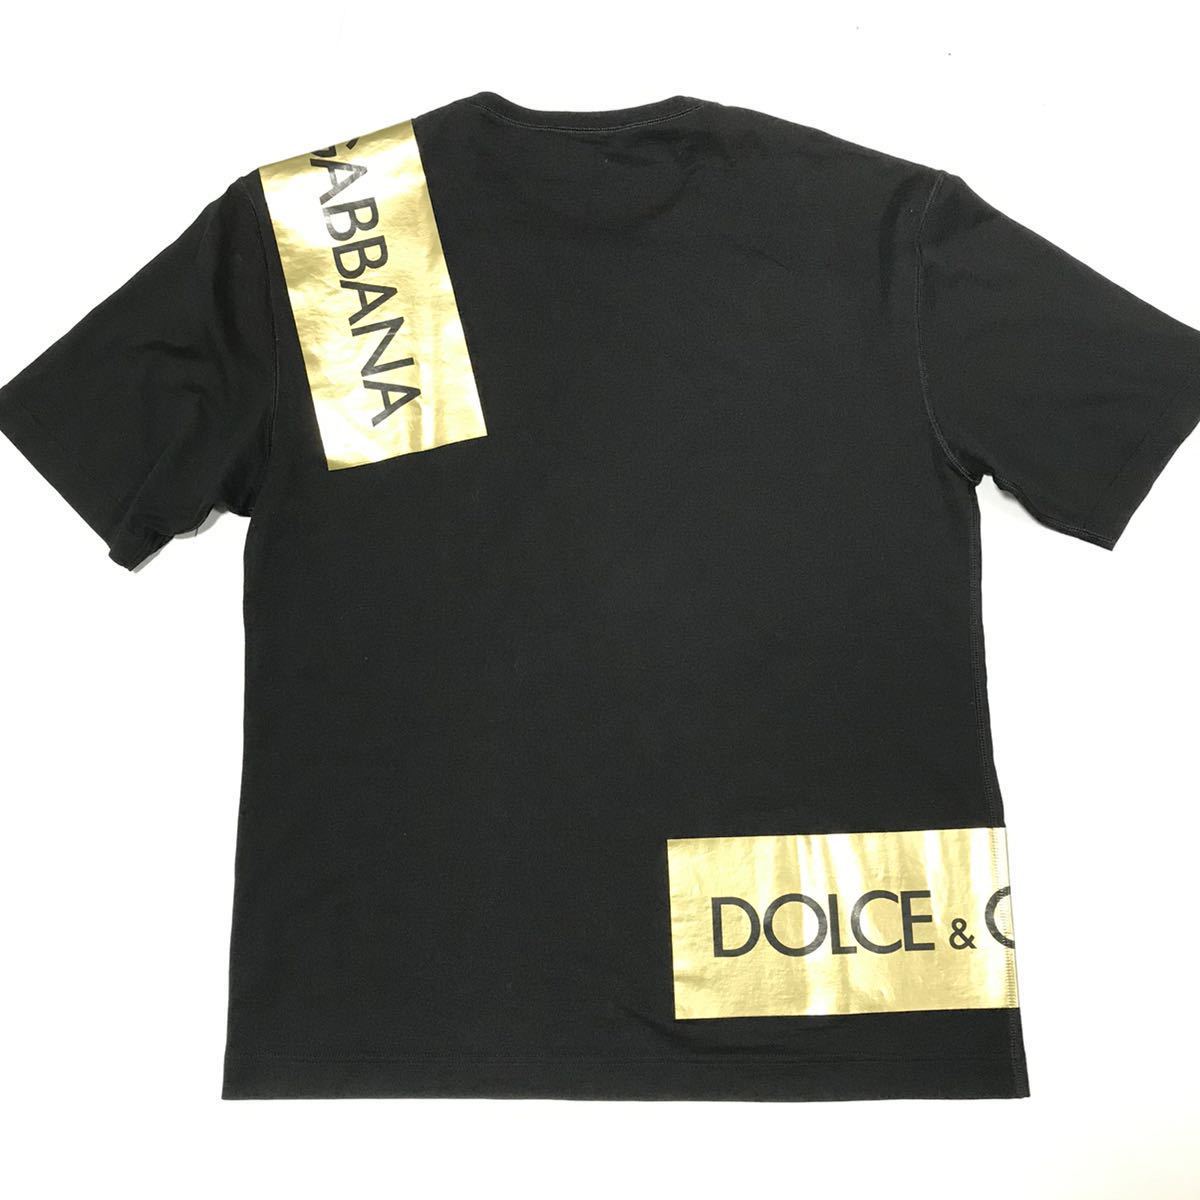 良い製品本物 DOLCE&GABBANA 半袖Tシャツ ロゴラベル トップス 黒 サイズ48 コットン100% 男性用 メンズ イタリア製 半袖Tシャツ